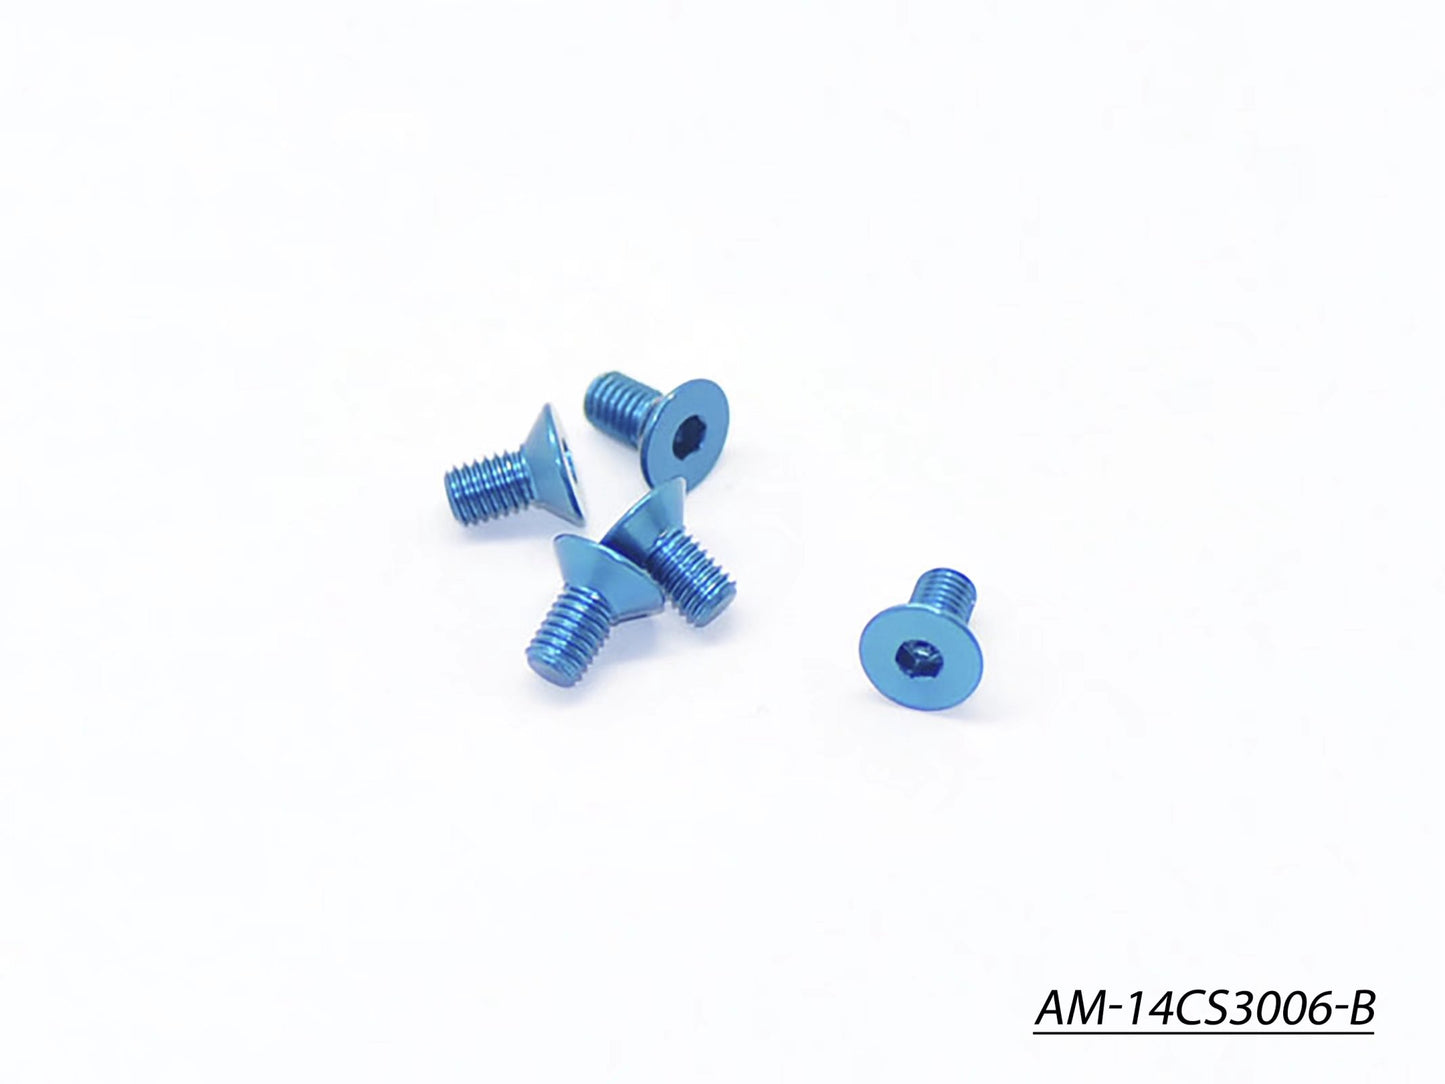 Alu Screw Allen Countersunk M3X6 Blue (7075) (5) (AM-14CS3006-B)